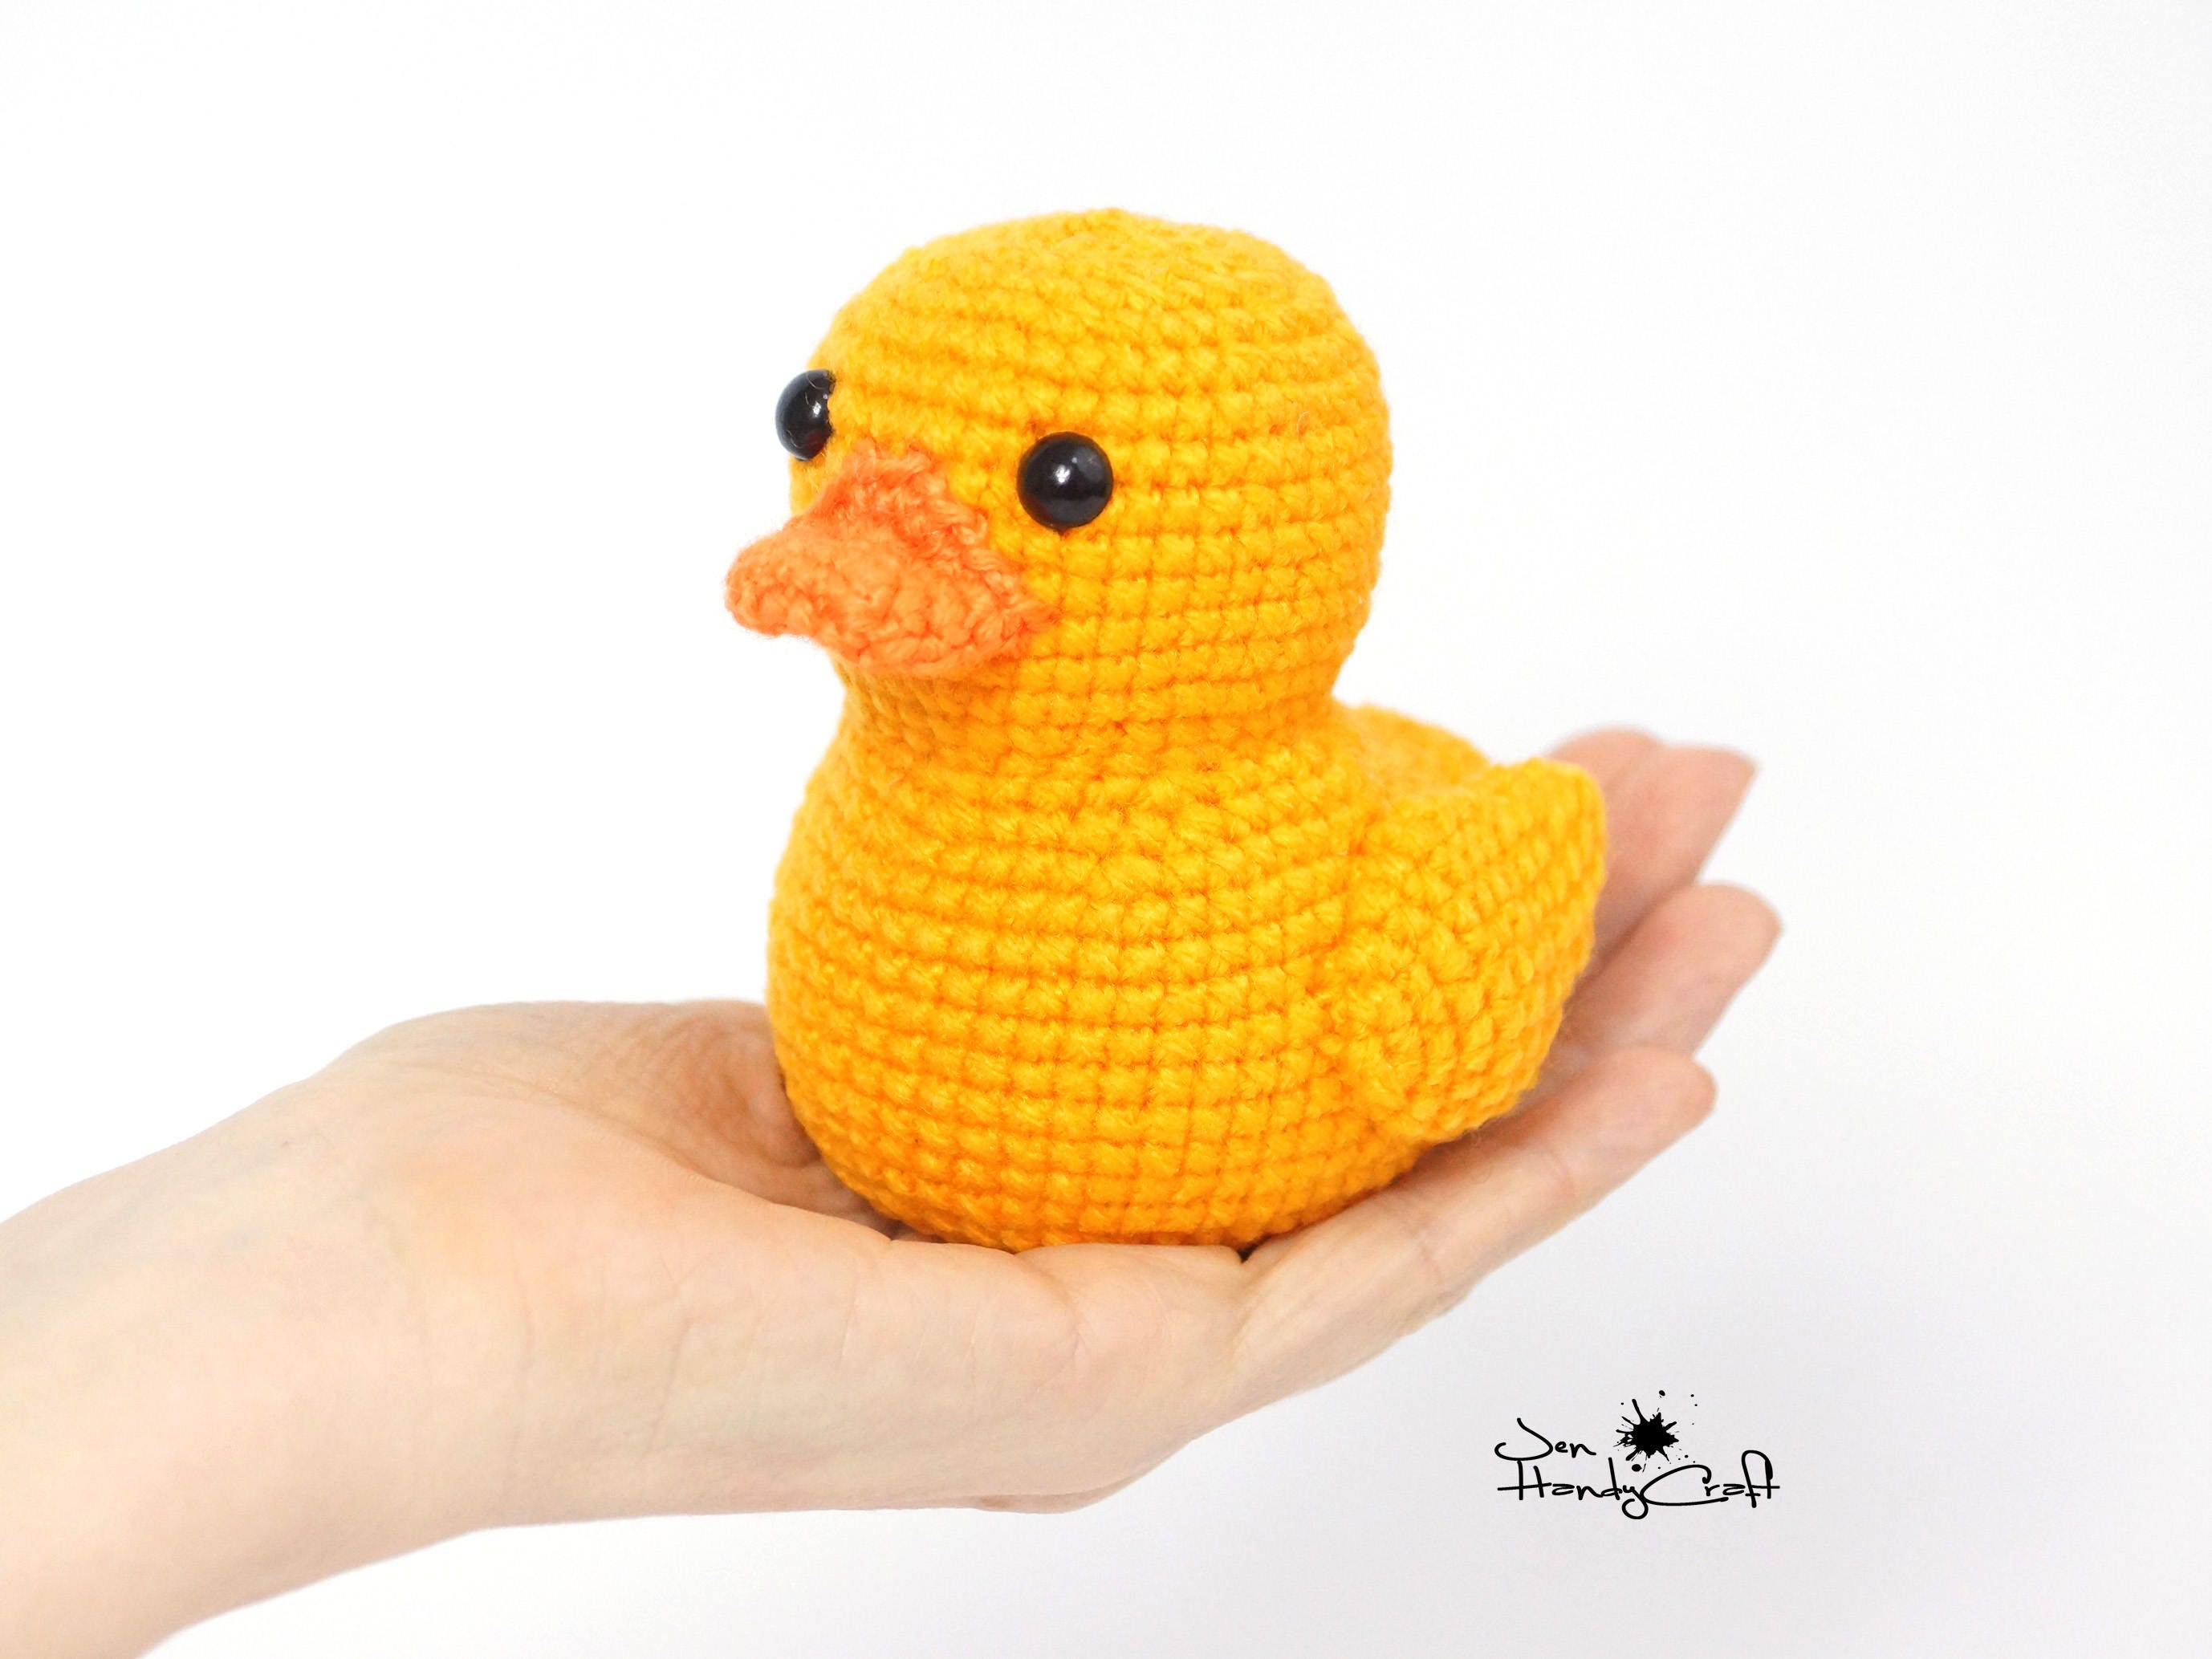 Cute Yellow Rubber Duck Duckies Pattern Tote Bag by Li Or - Fine Art America